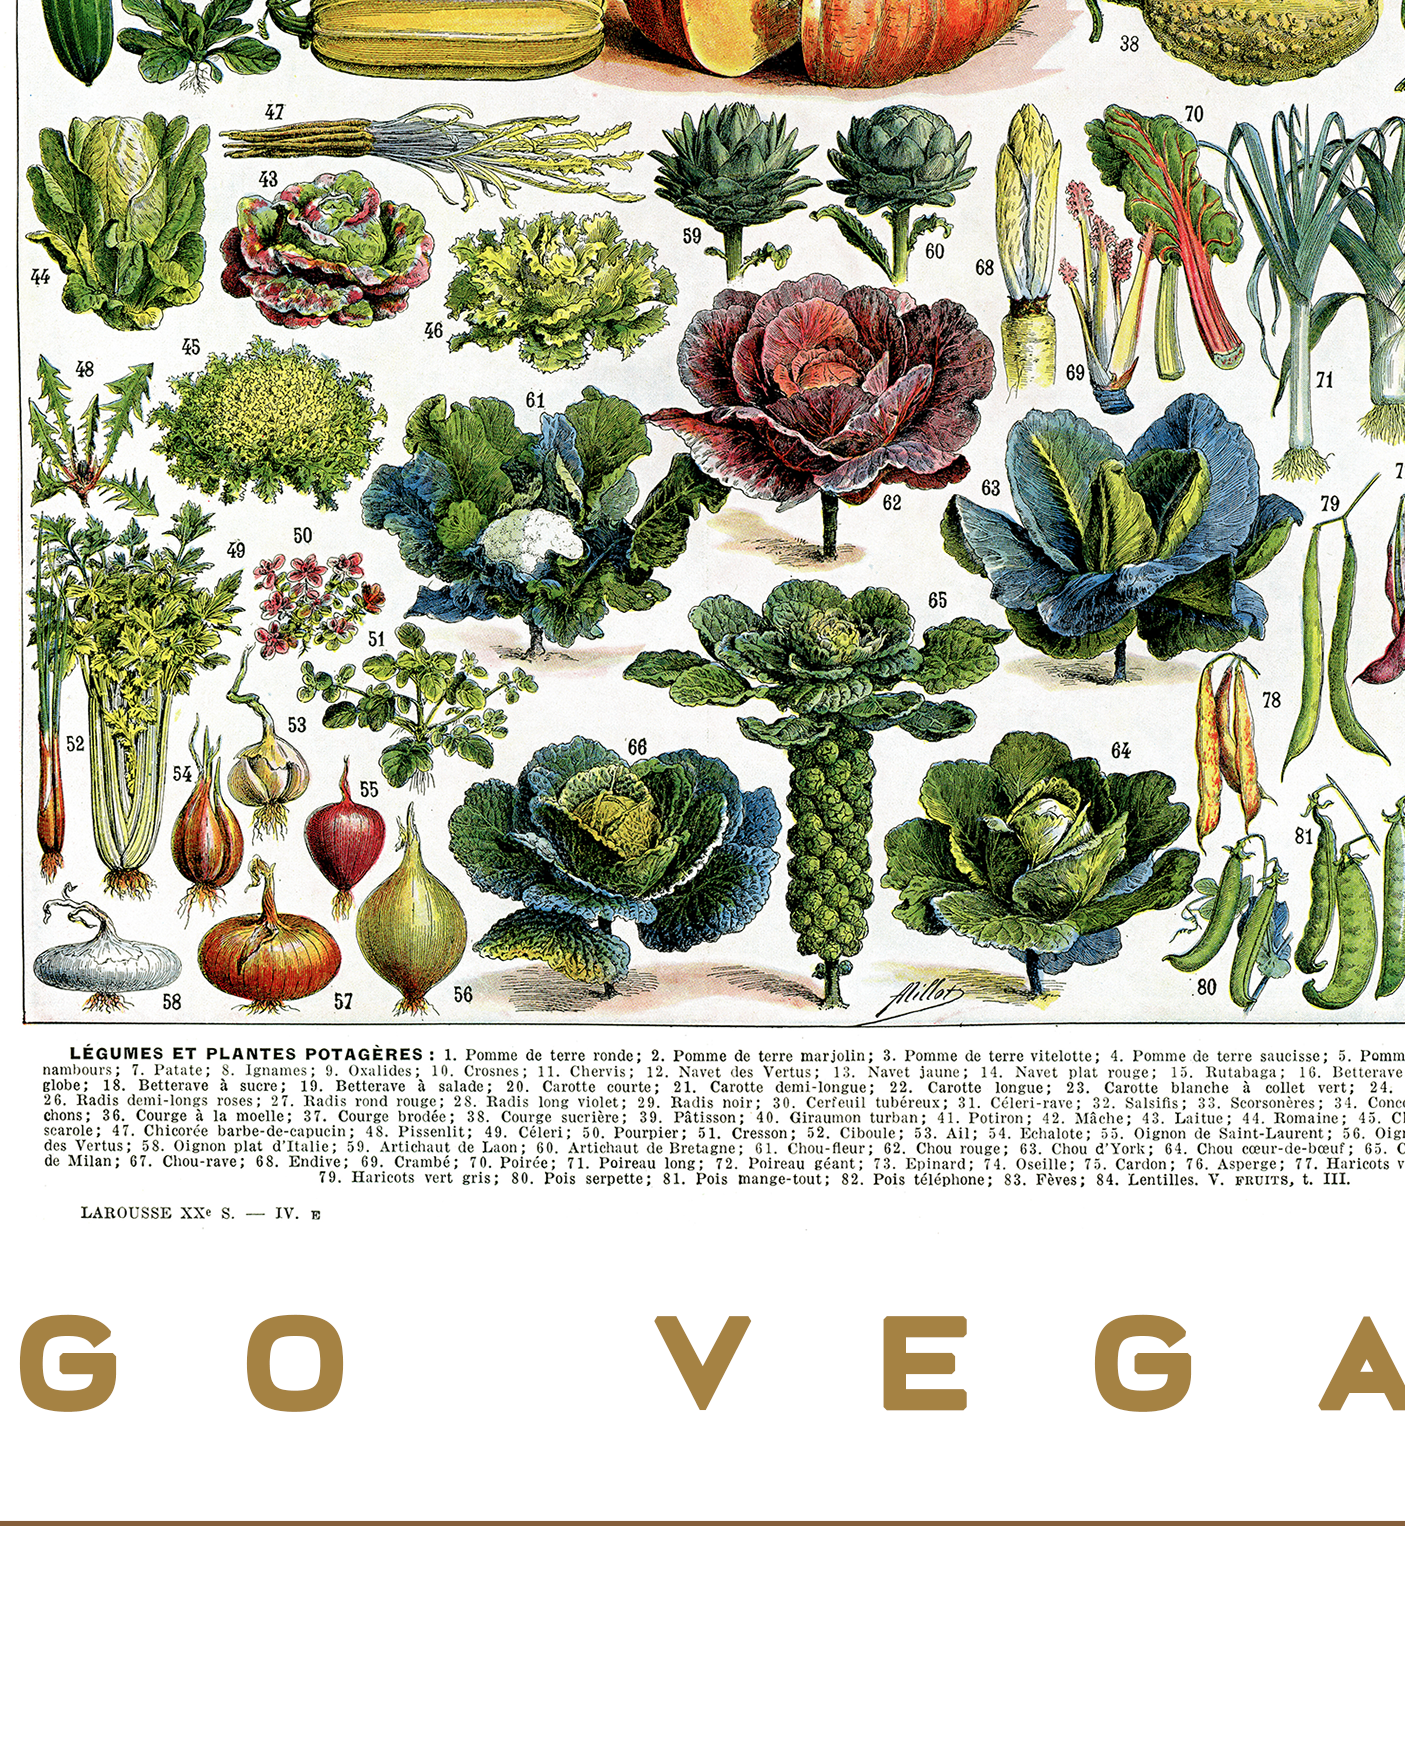 Large Go Vegan Vegetables poster